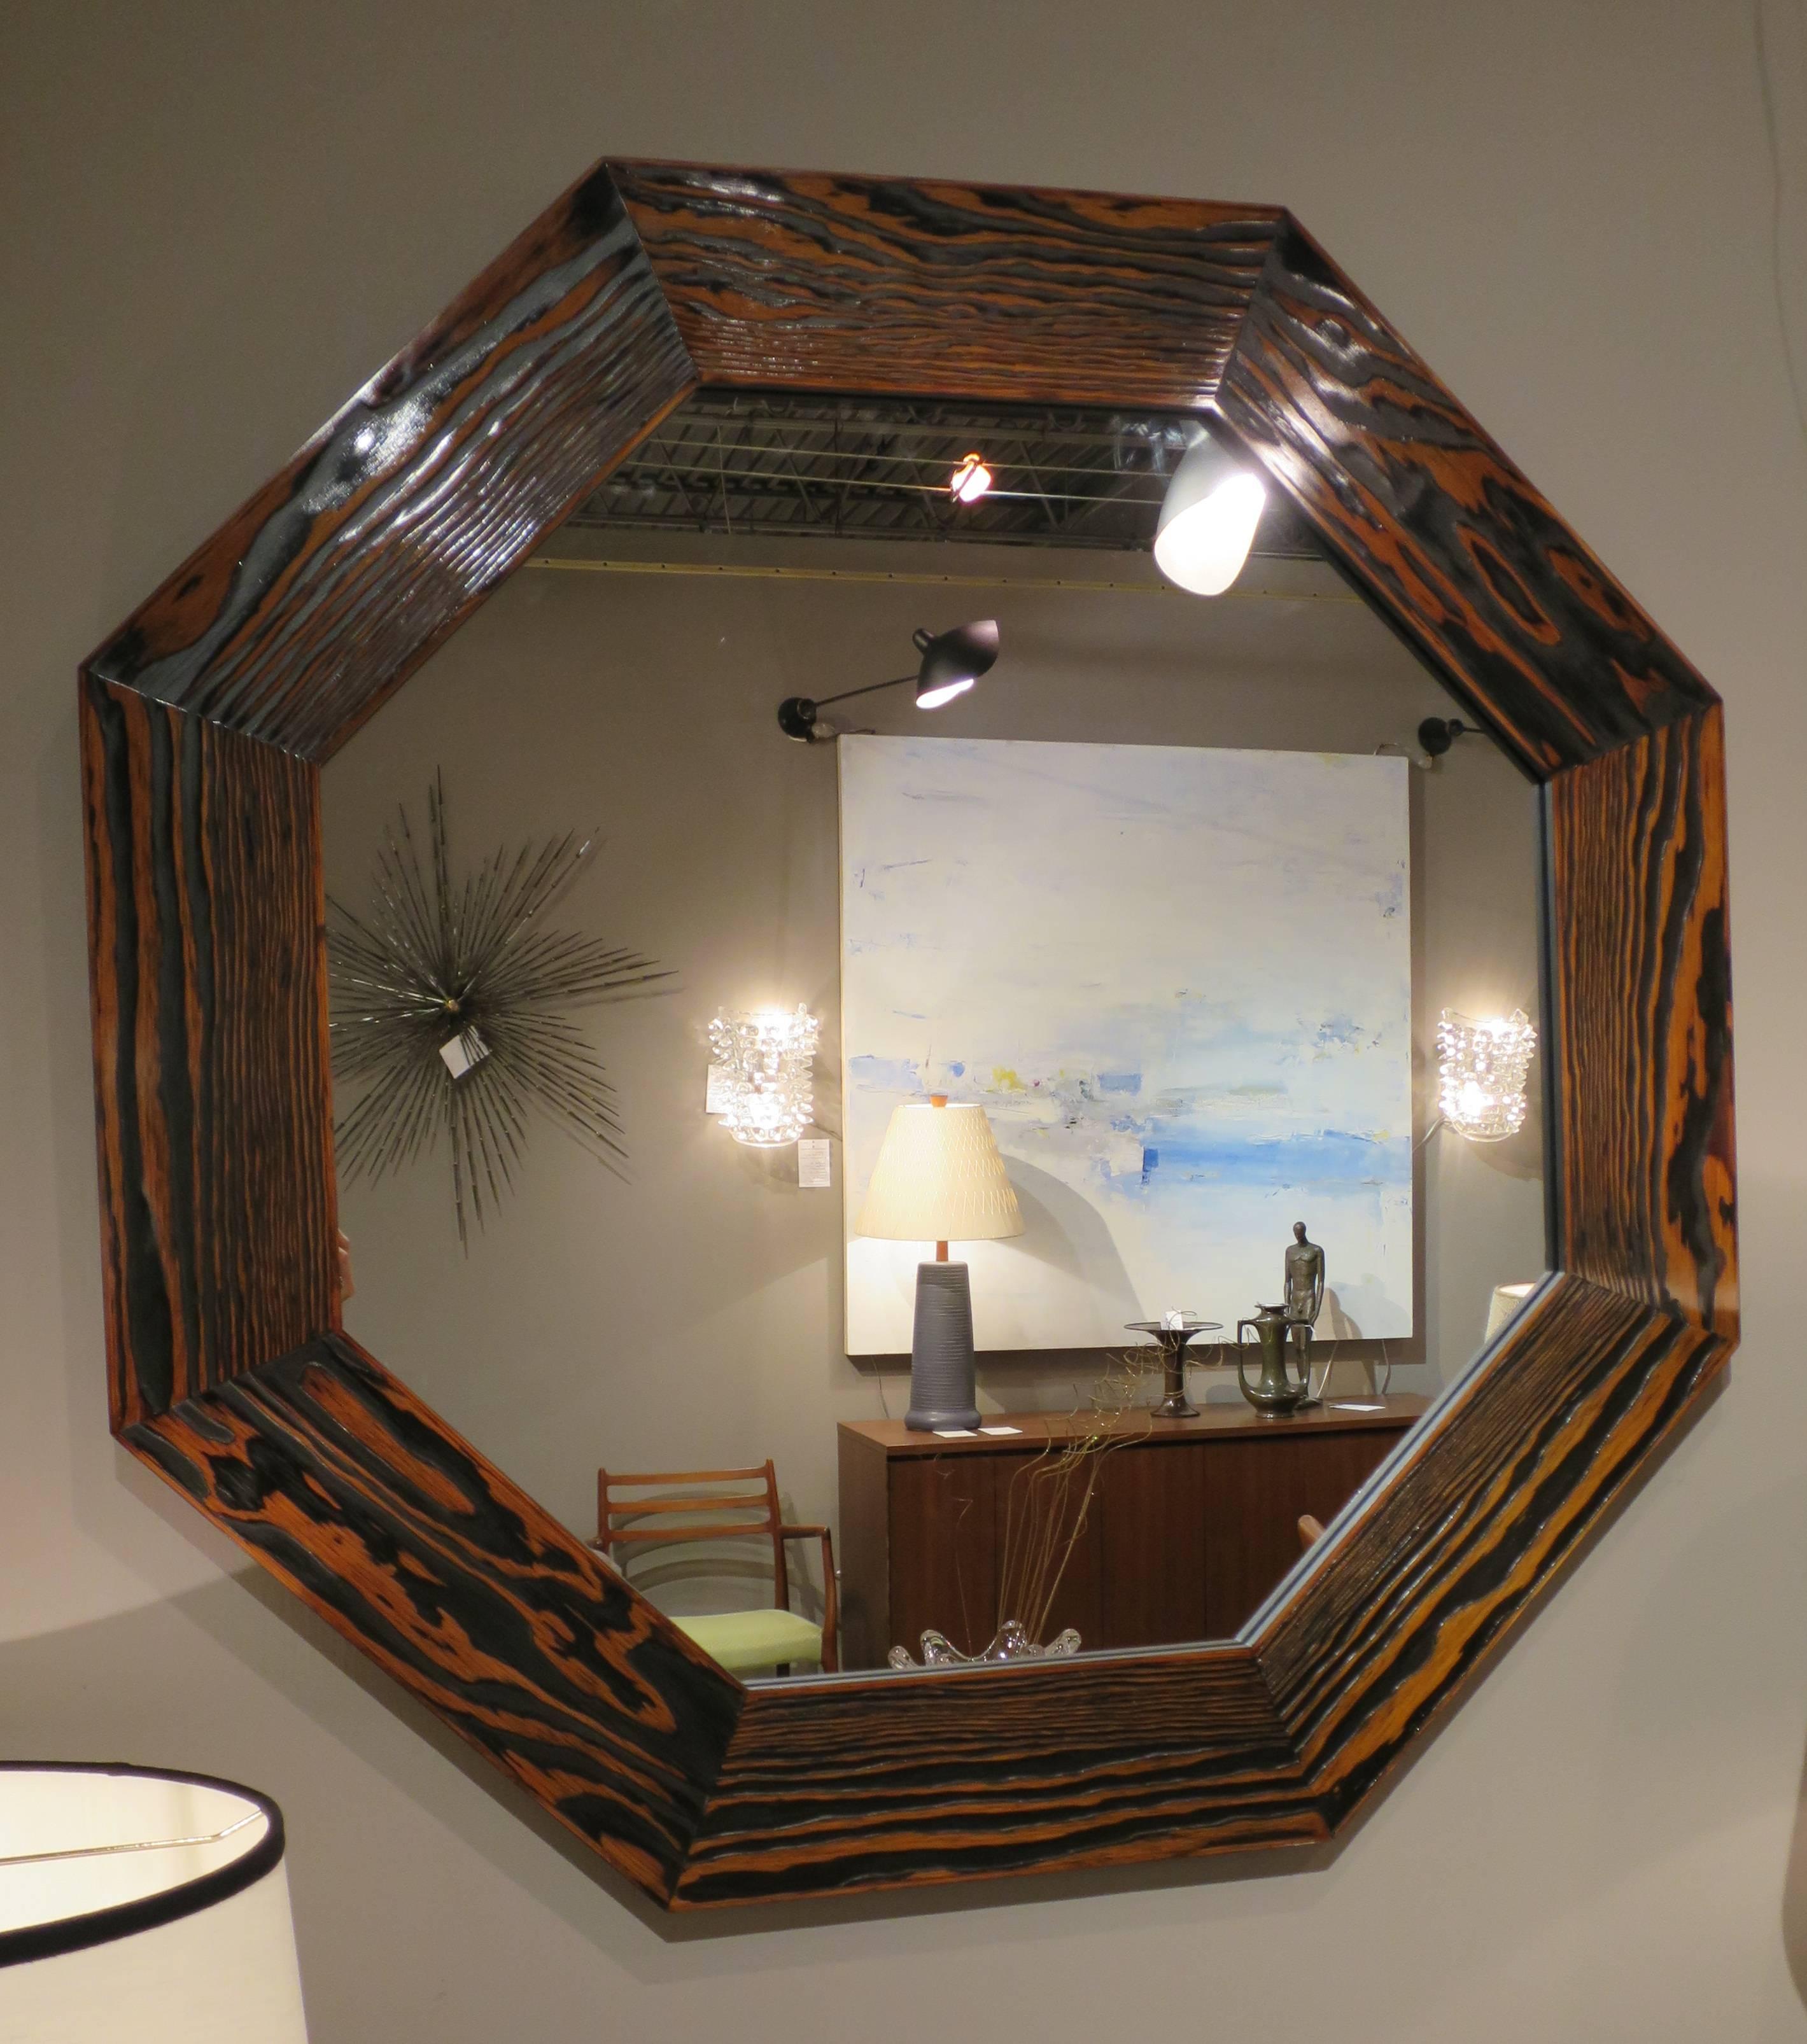 Miroirs octogonaux nouvellement produits, inspirés par l'icône du design Art déco - Eileen Grey. Sapin Douglas, traité et laqué pour obtenir une surface profondément texturée en noir et brun moyen pour accentuer le beau grain. Tailles sur mesure